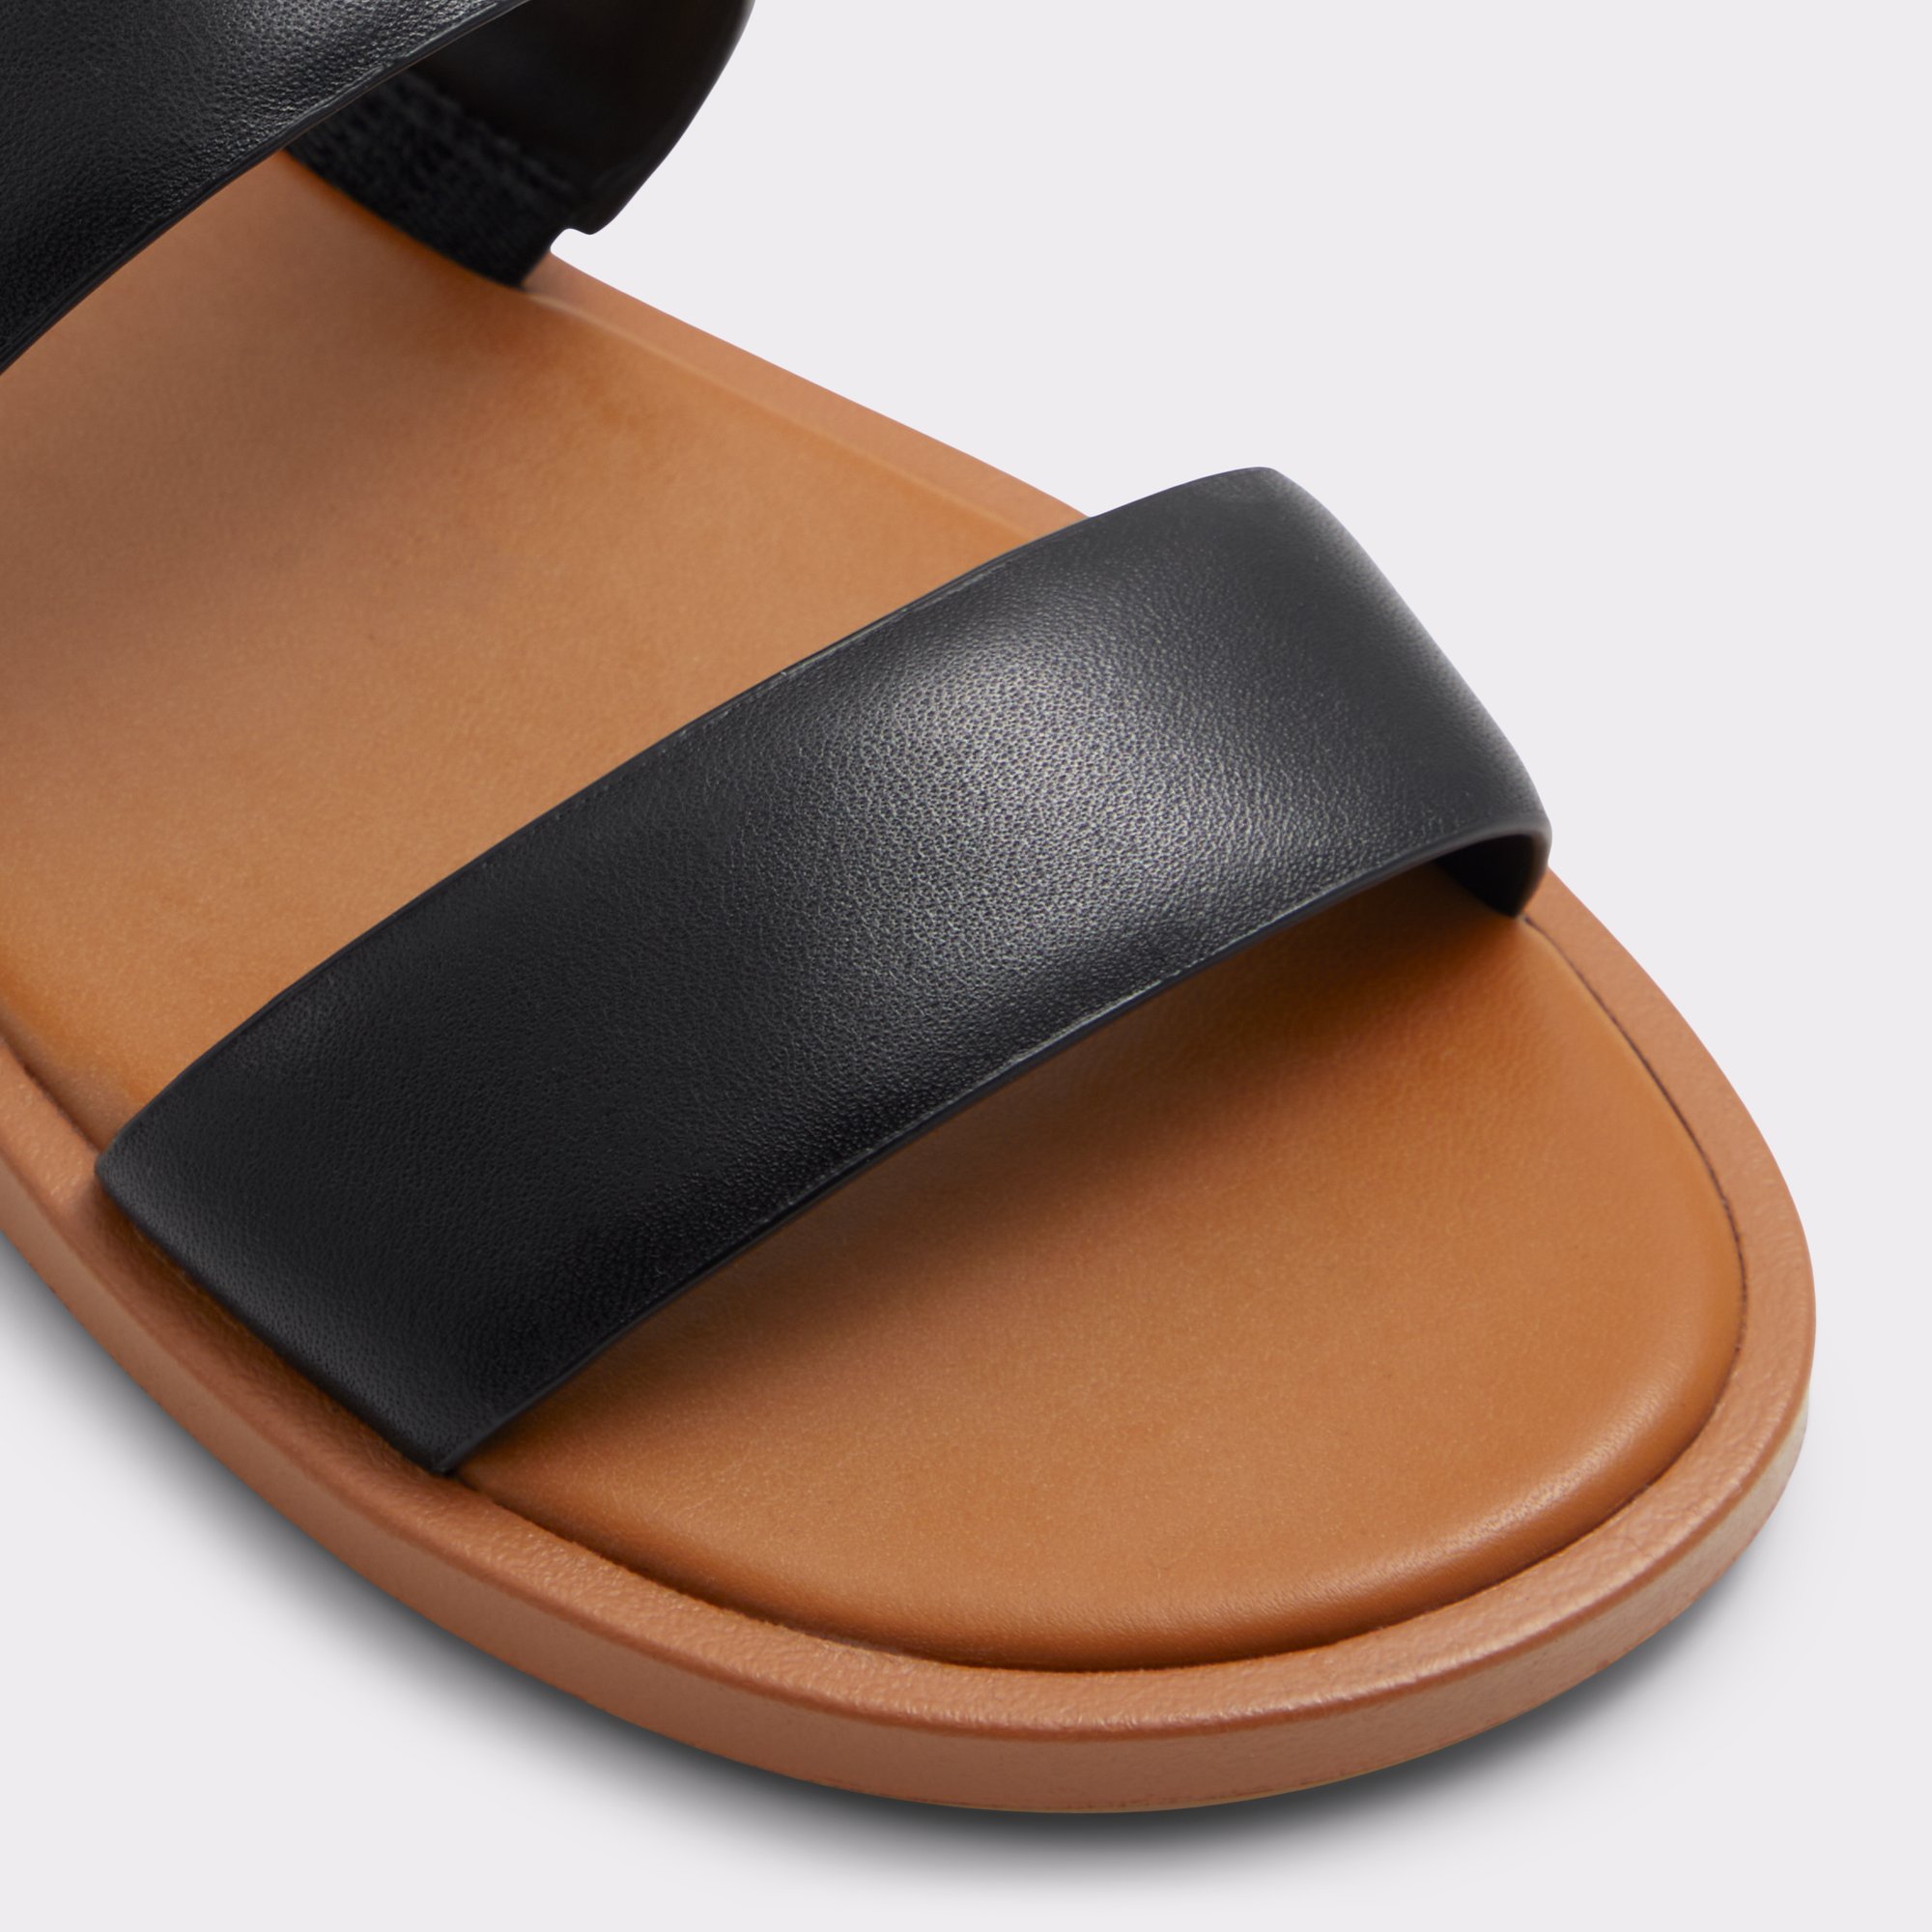 Krios Black Women's Flat Sandals | ALDO Canada